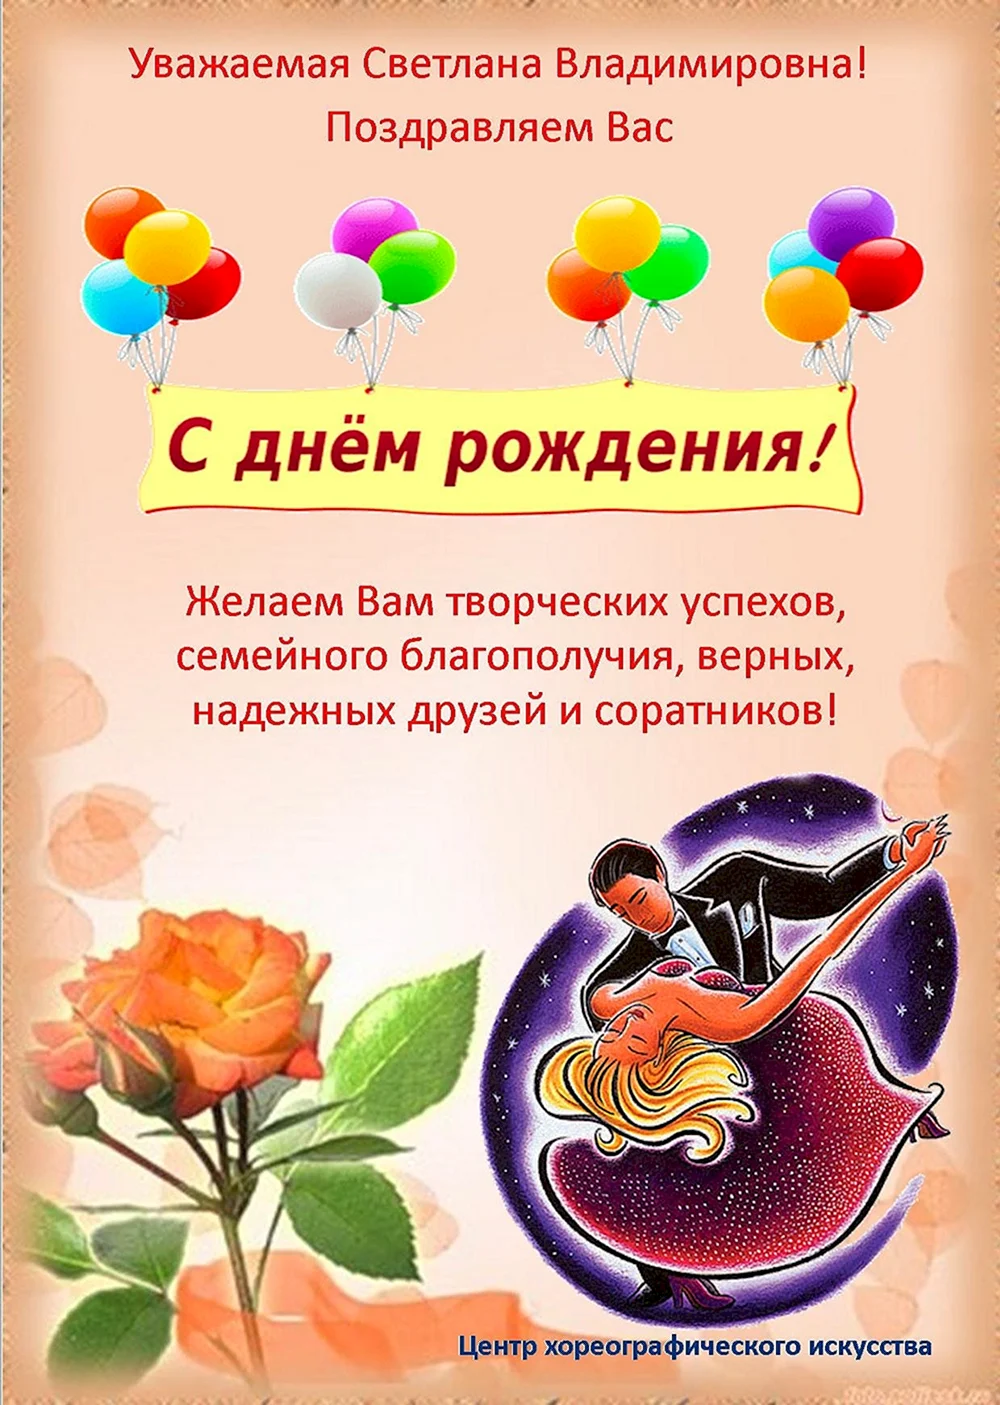 Поздравления с днём рождения Светлана Владимировна